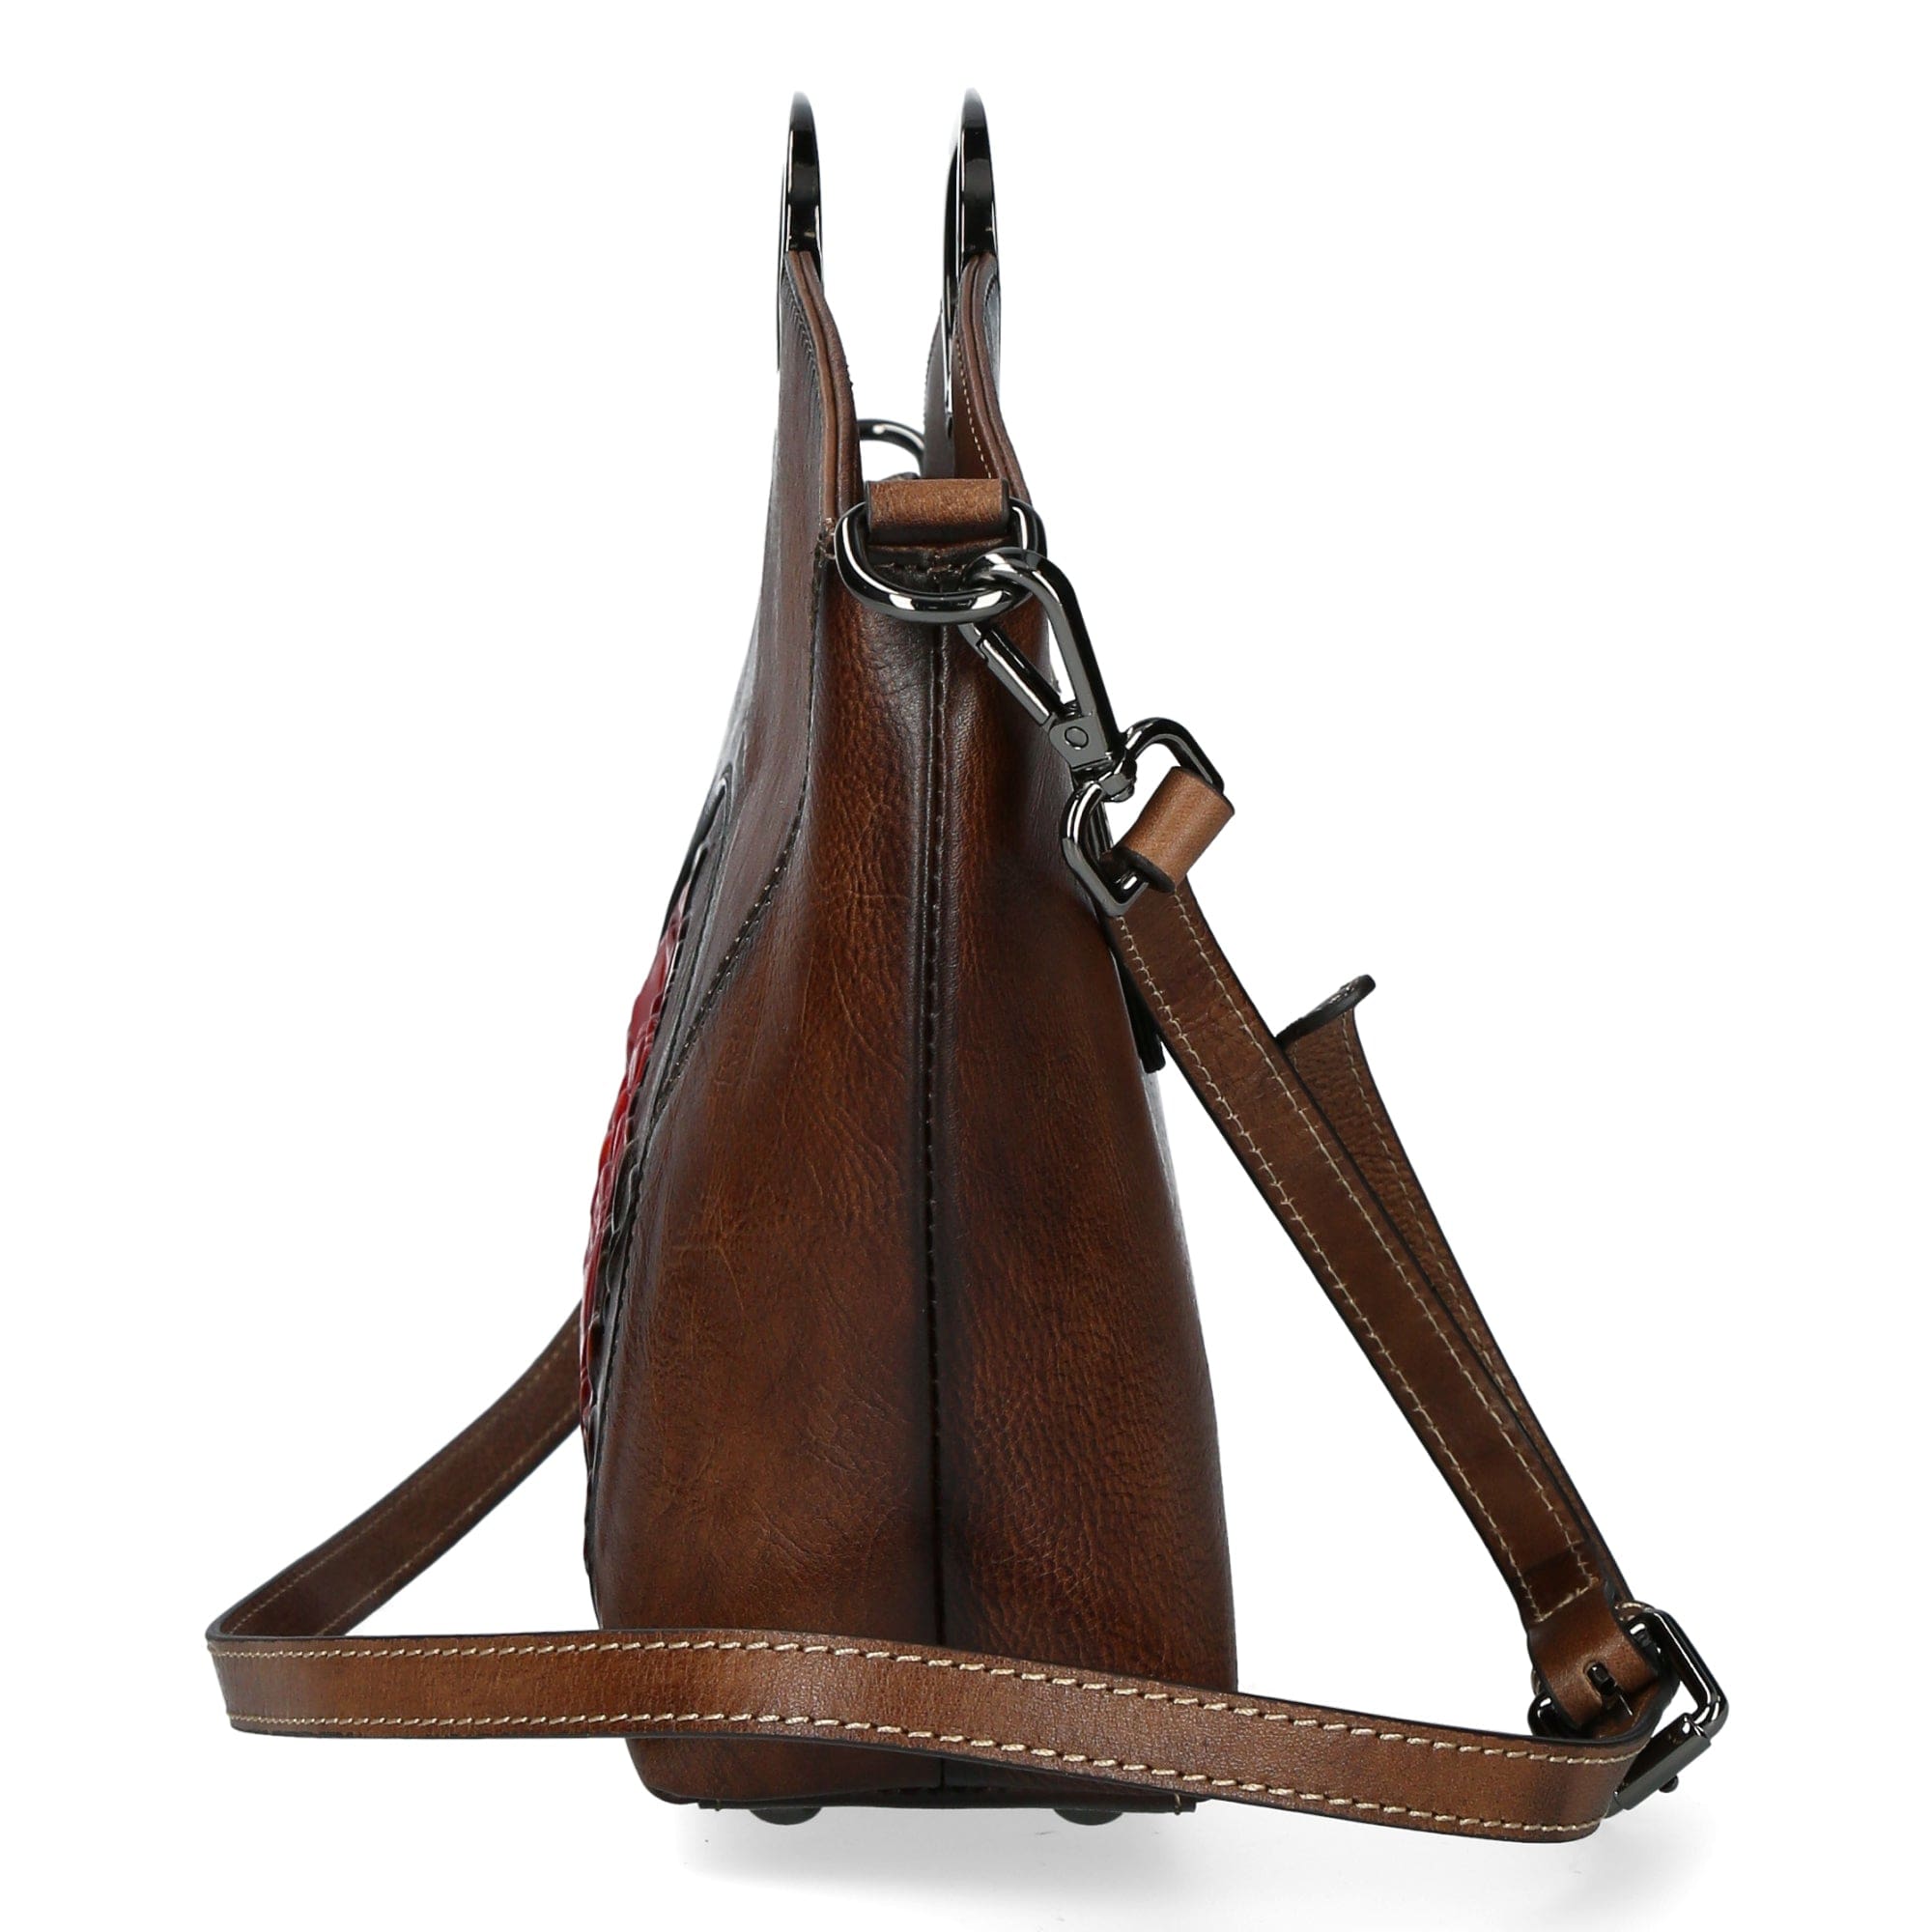 Erytheia leather bag - Bag